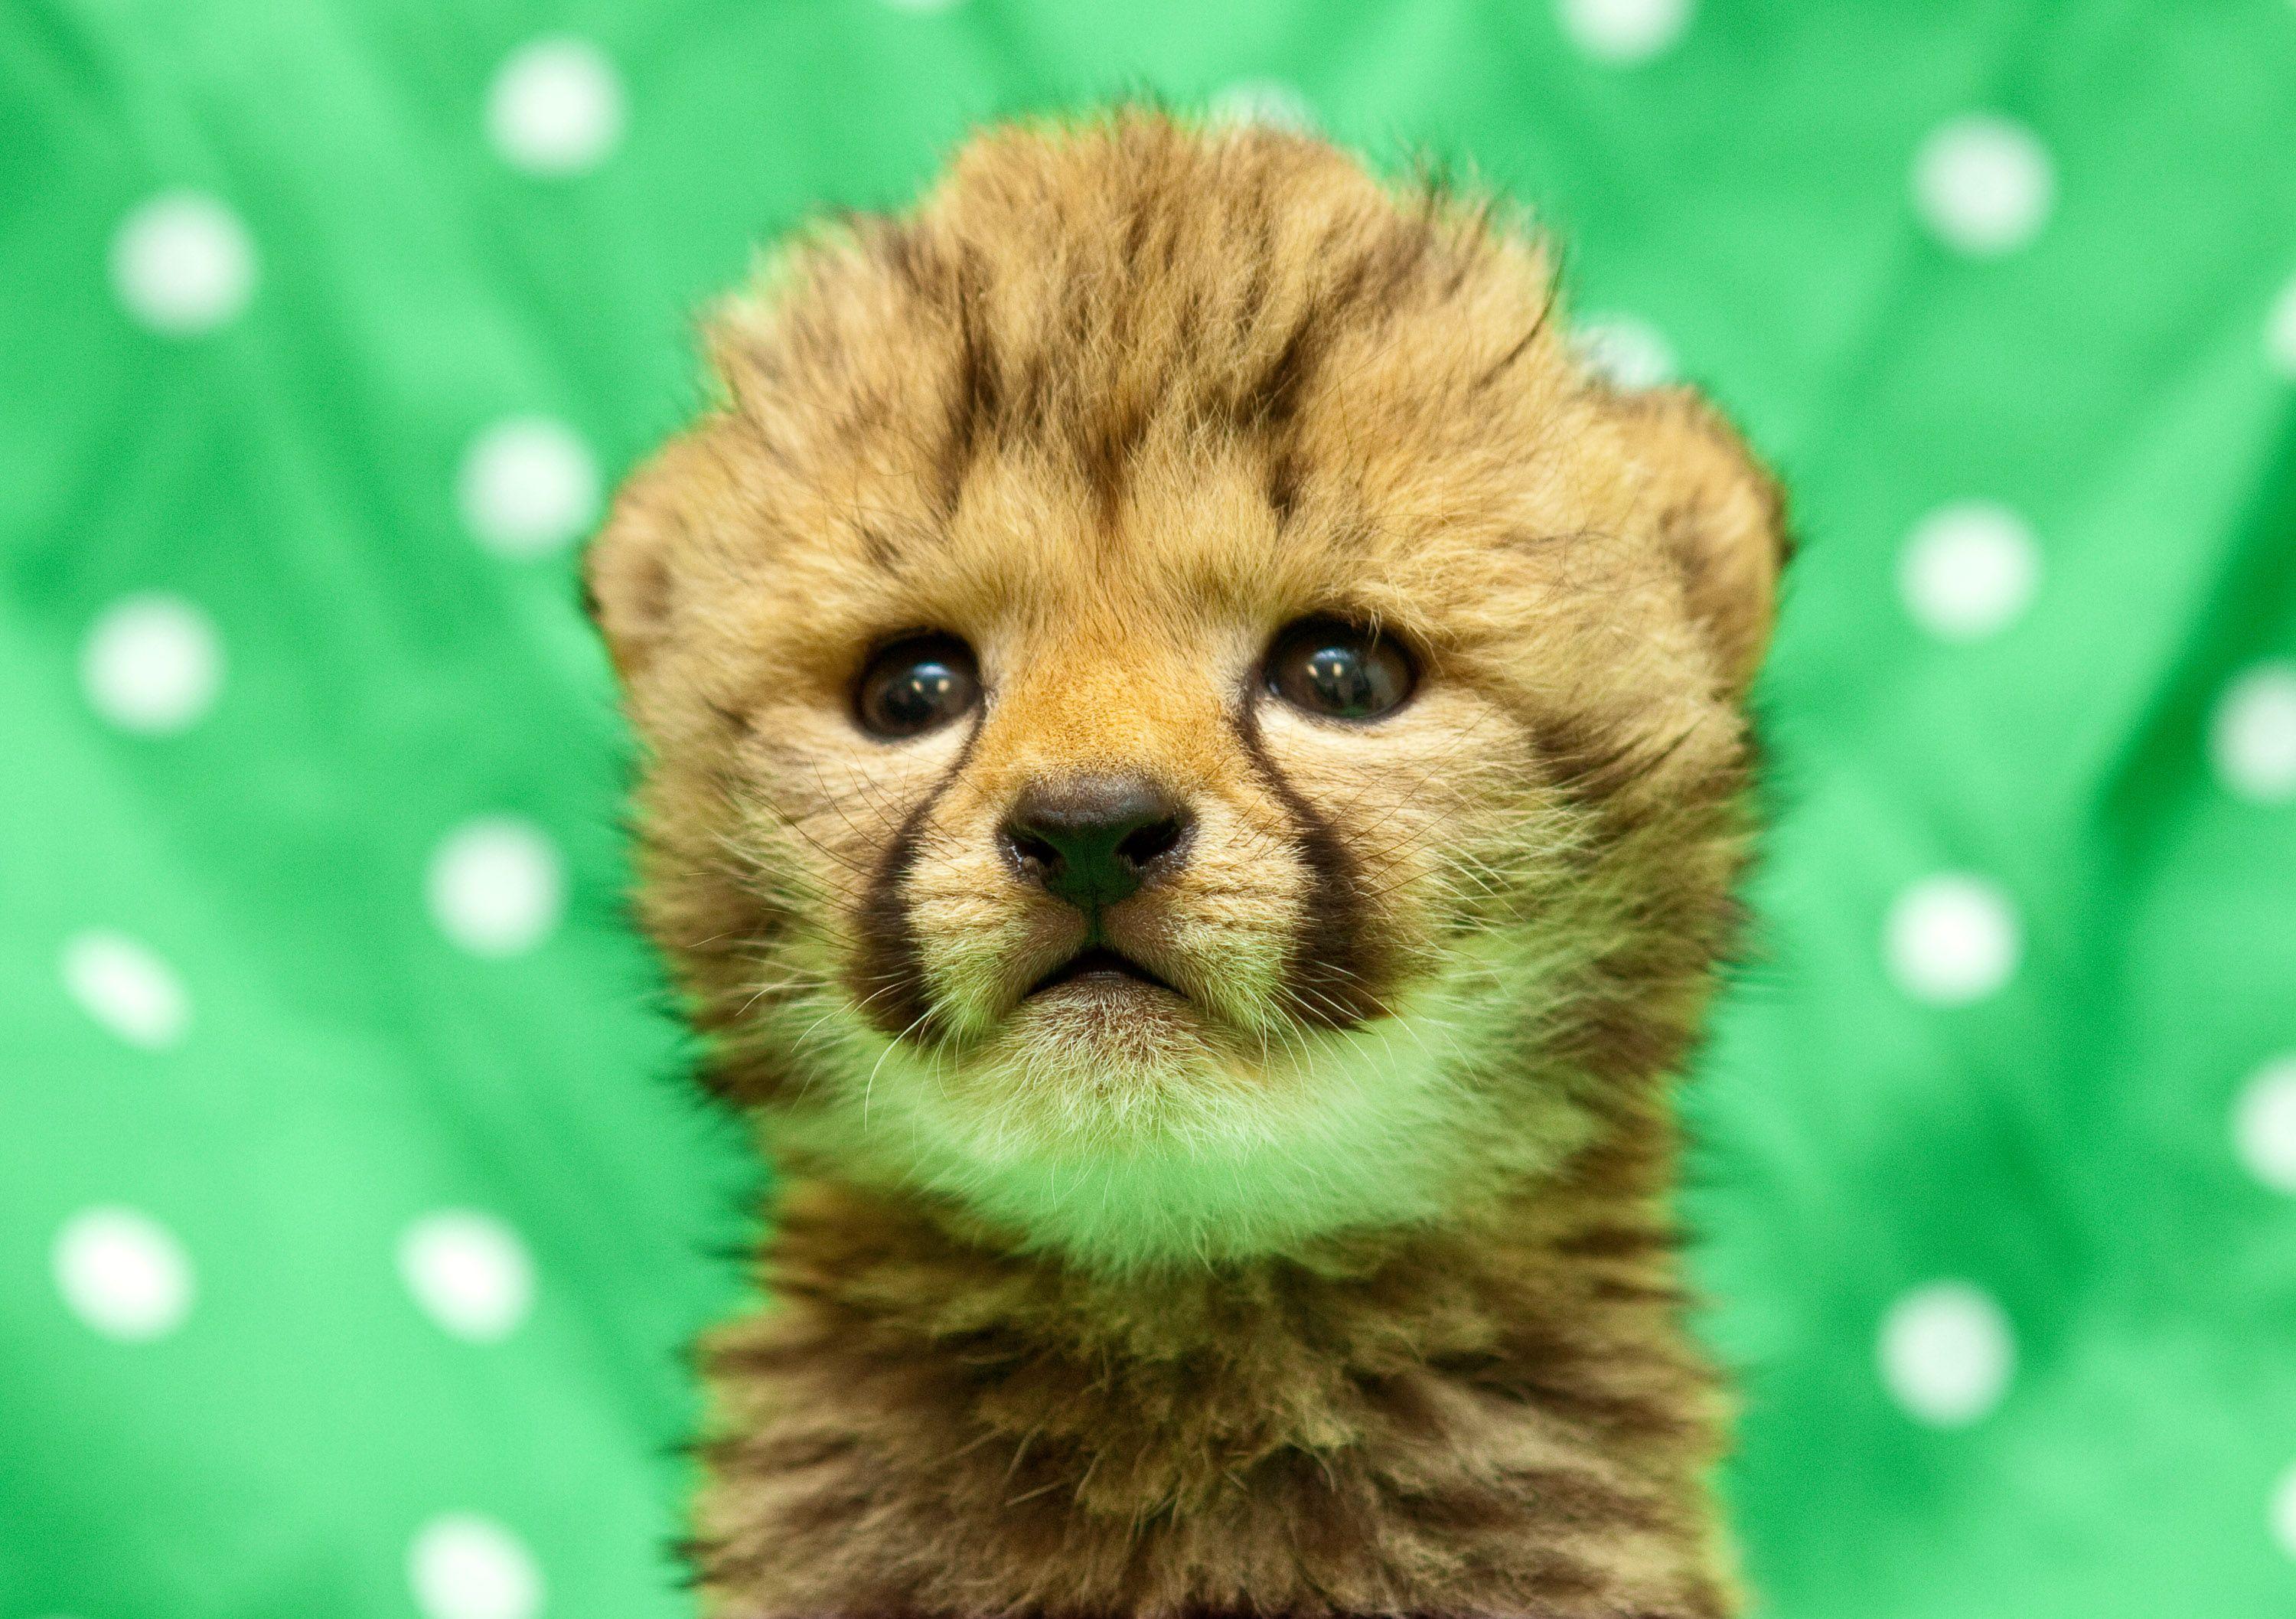 Cheetah image cheetah cub HD wallpaper and background photo